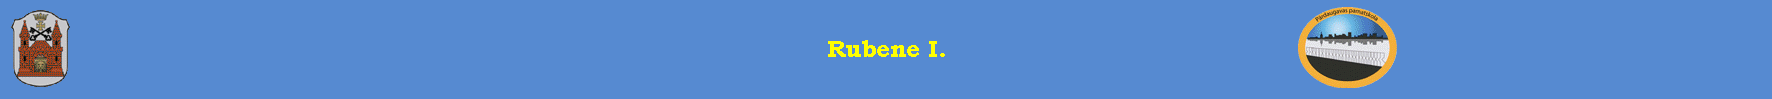 Rubene I.